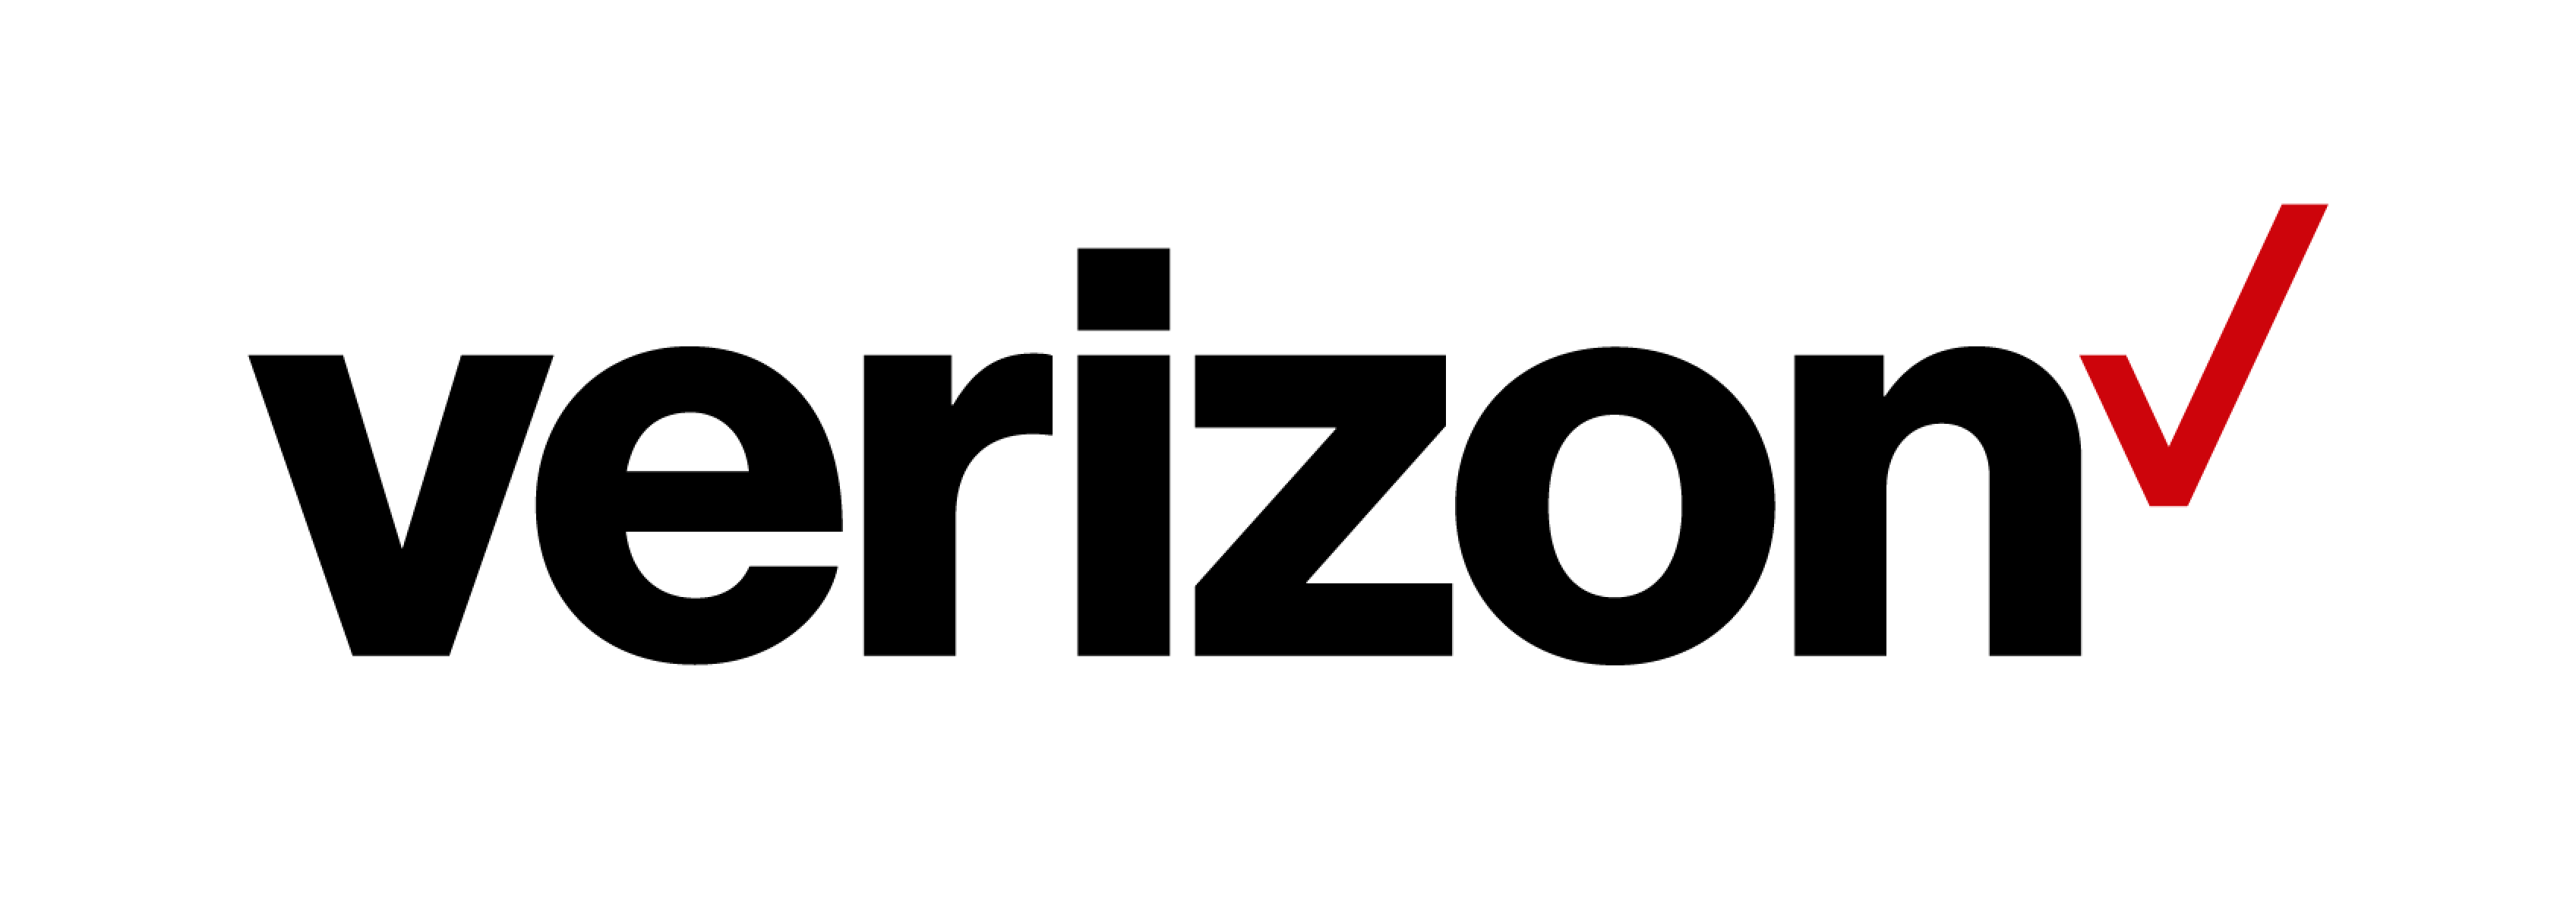 Verizon Logo - 2016